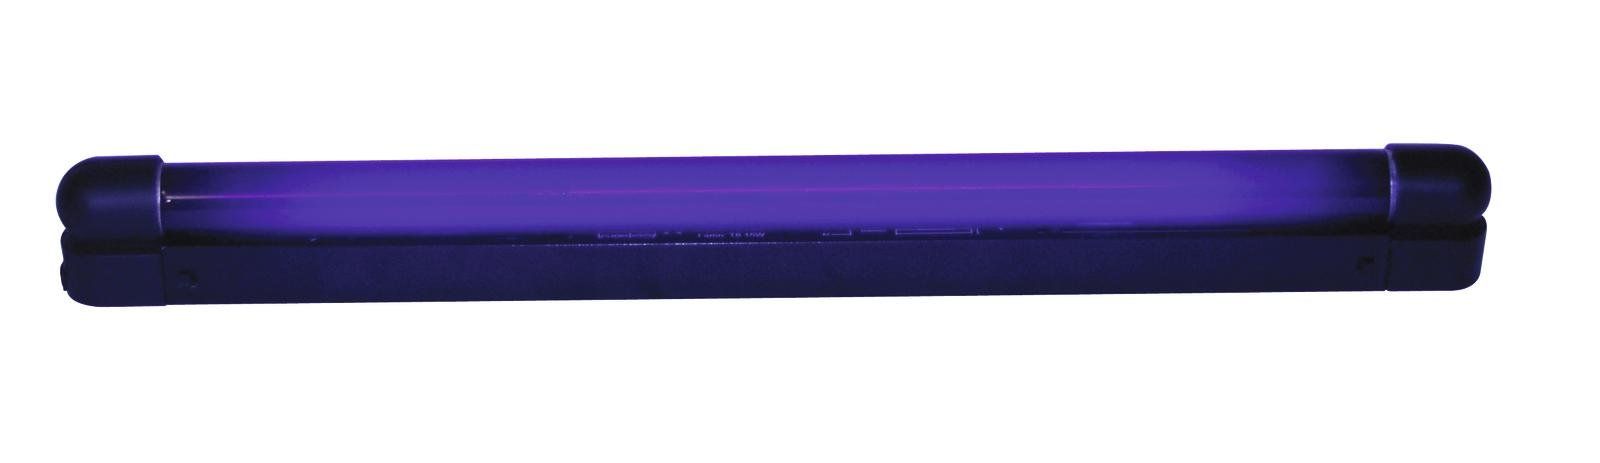 Eurolite UV-Tube 45cm